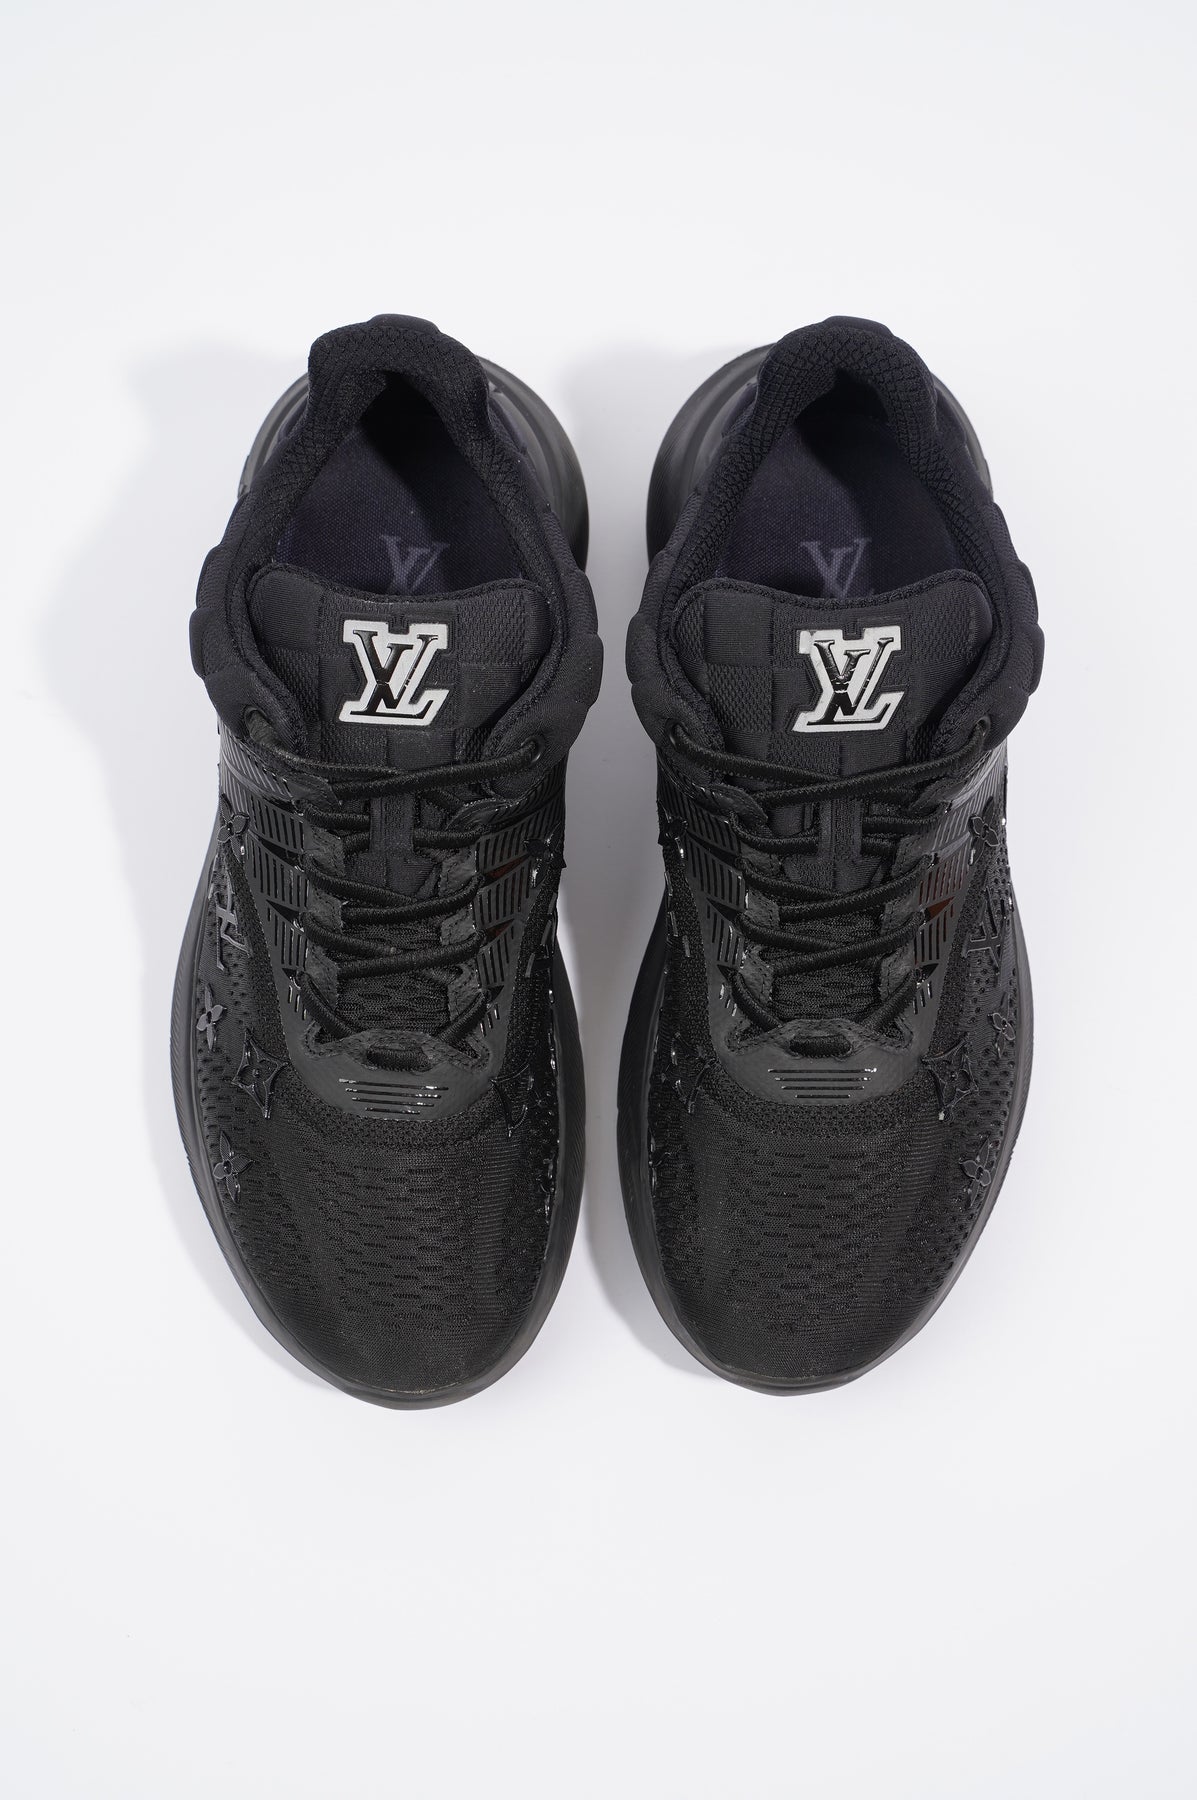 Louis Vuitton Show Up Sneaker BLACK. Size 06.0